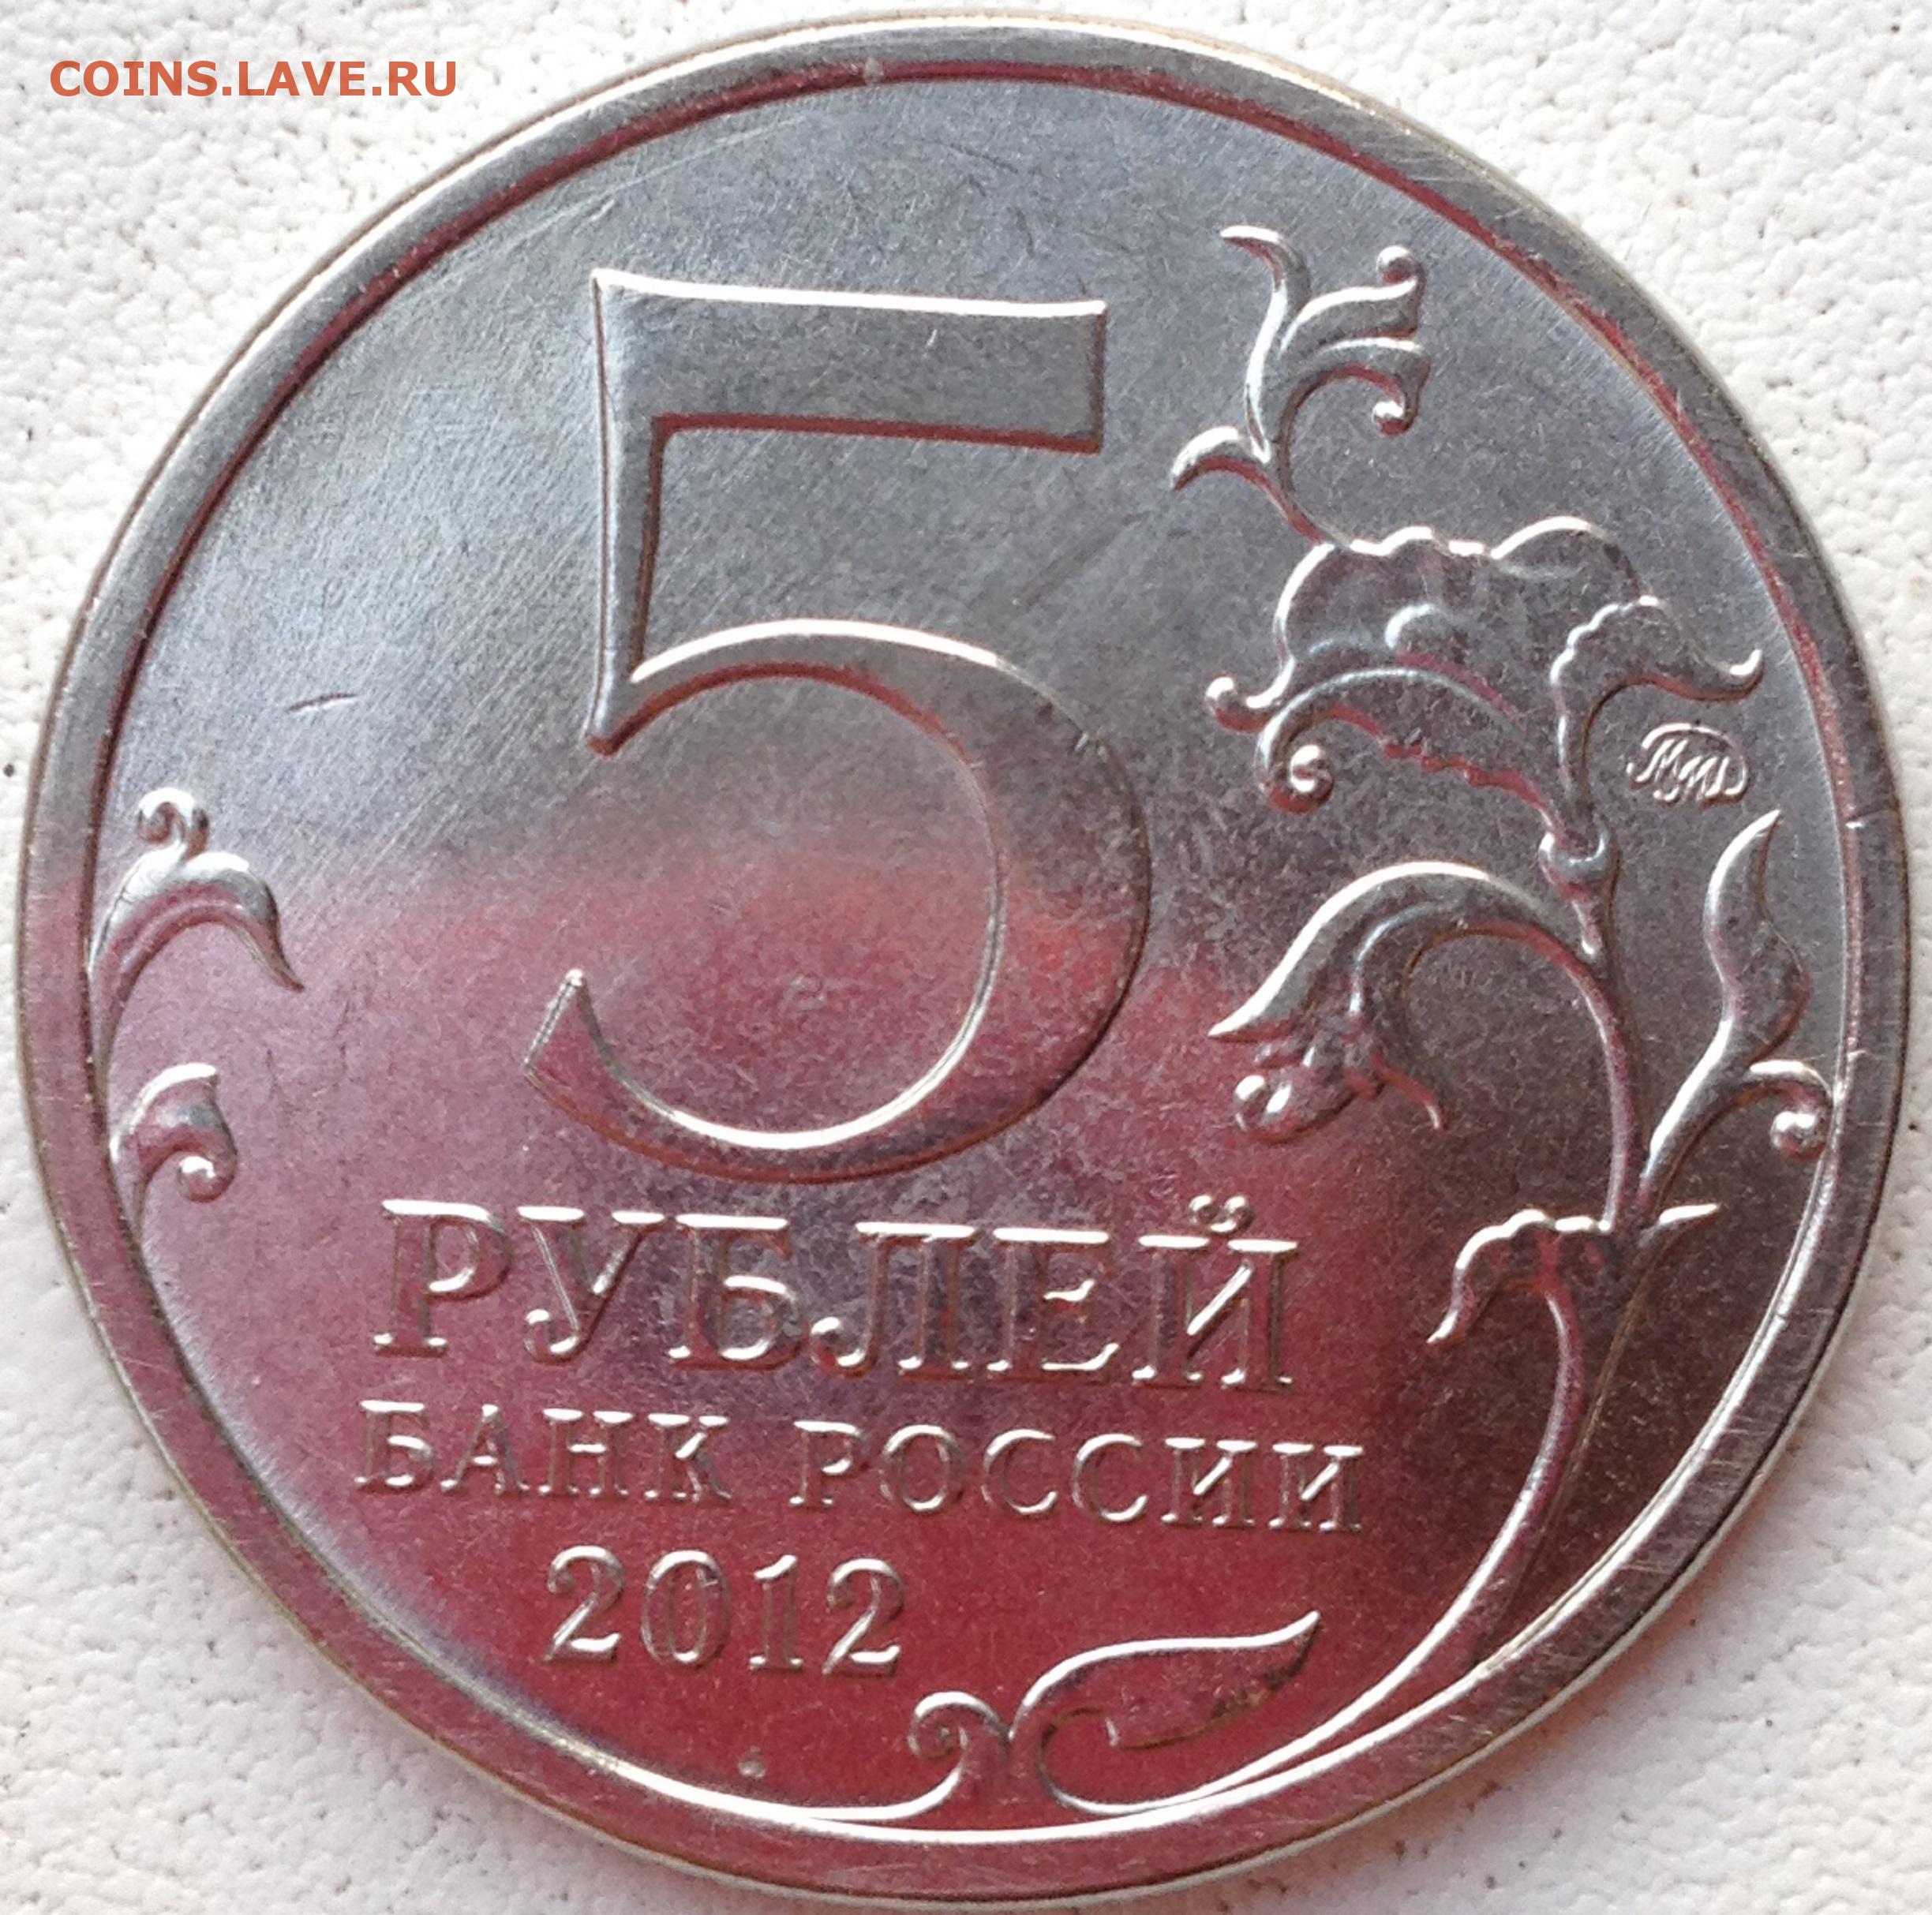 5 рублей взятие парижа. Монета взятие Парижа 5 руб 2012 г. Монета взятие Парижа. 5 Рублей 2012 взятие Парижа.